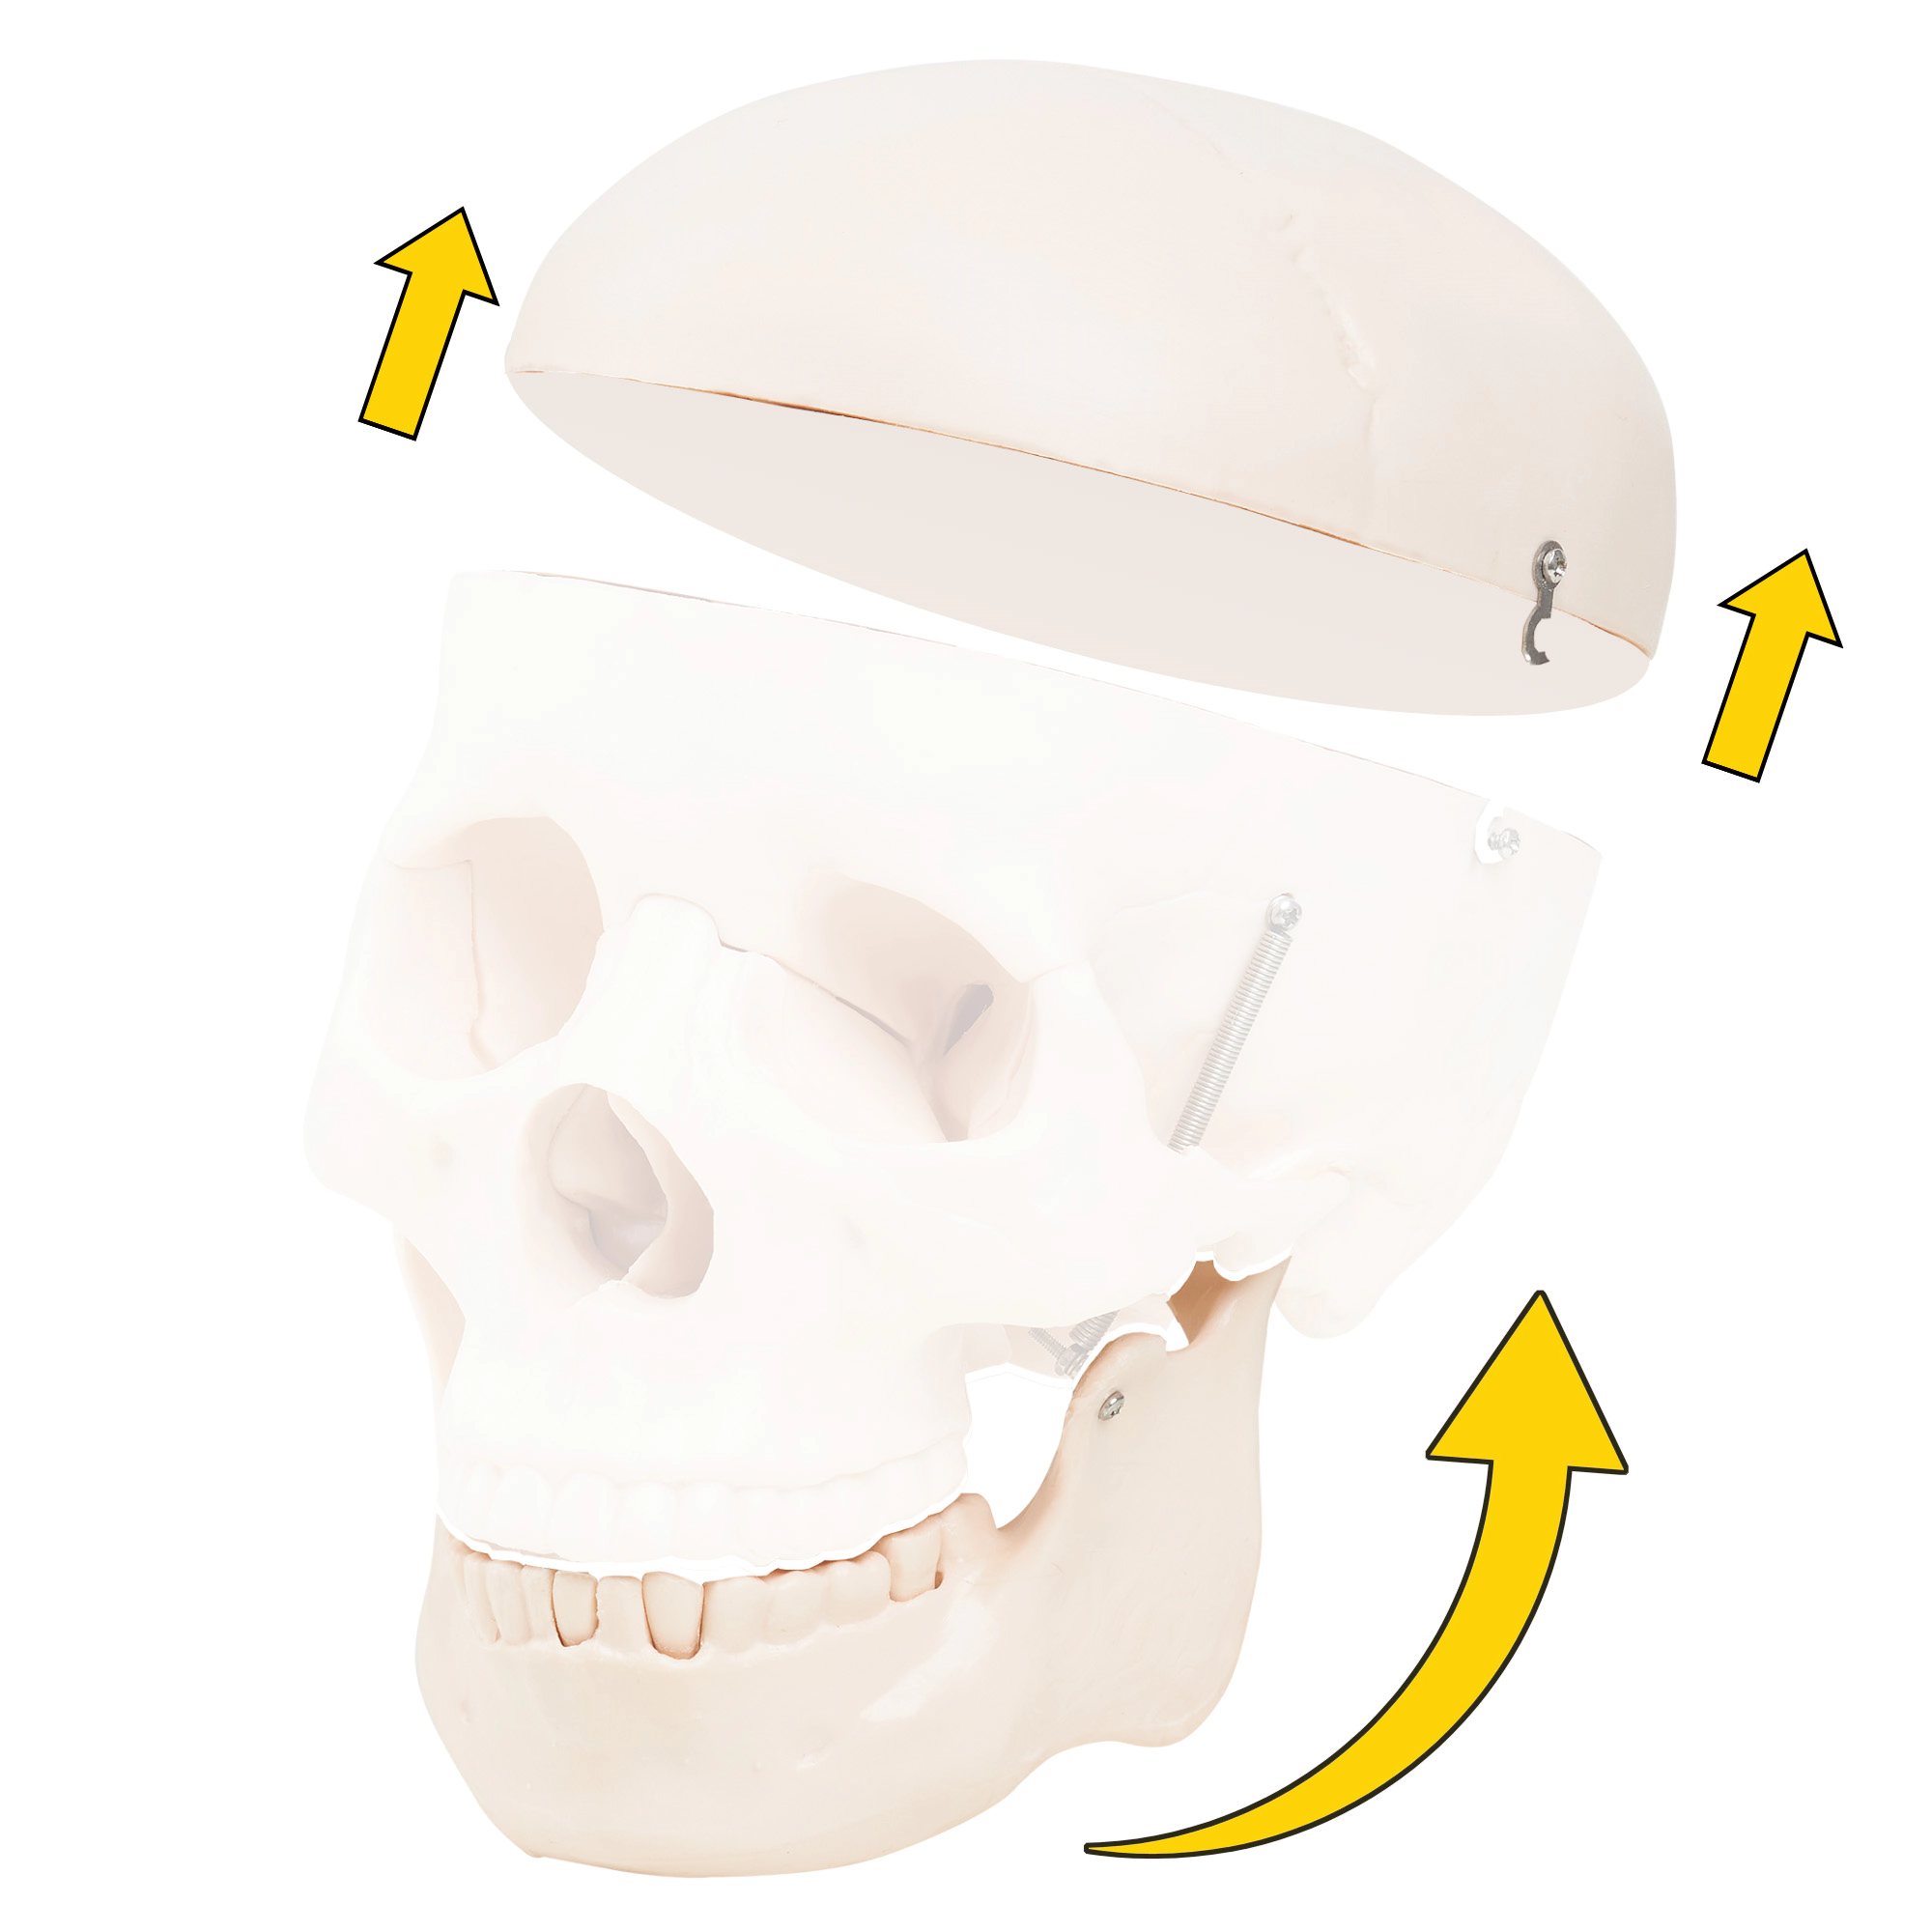 czaszka ludzka model anatomiczny 1:1